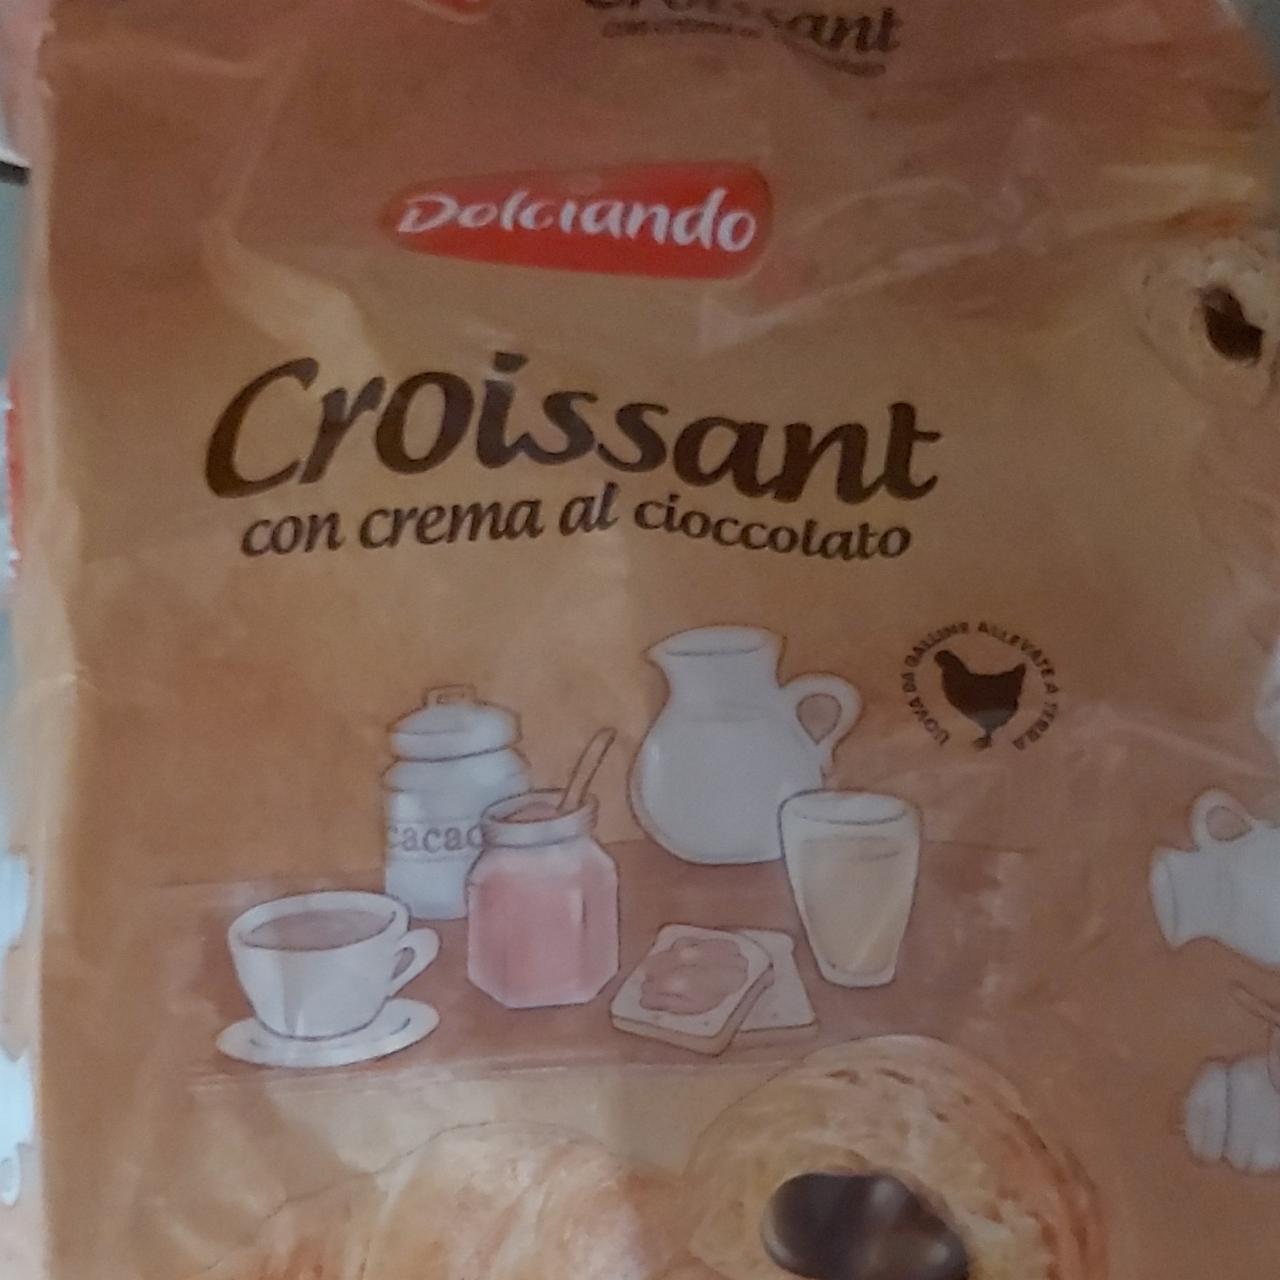 Fotografie - Croissant con crema al cioccolato Dolciando